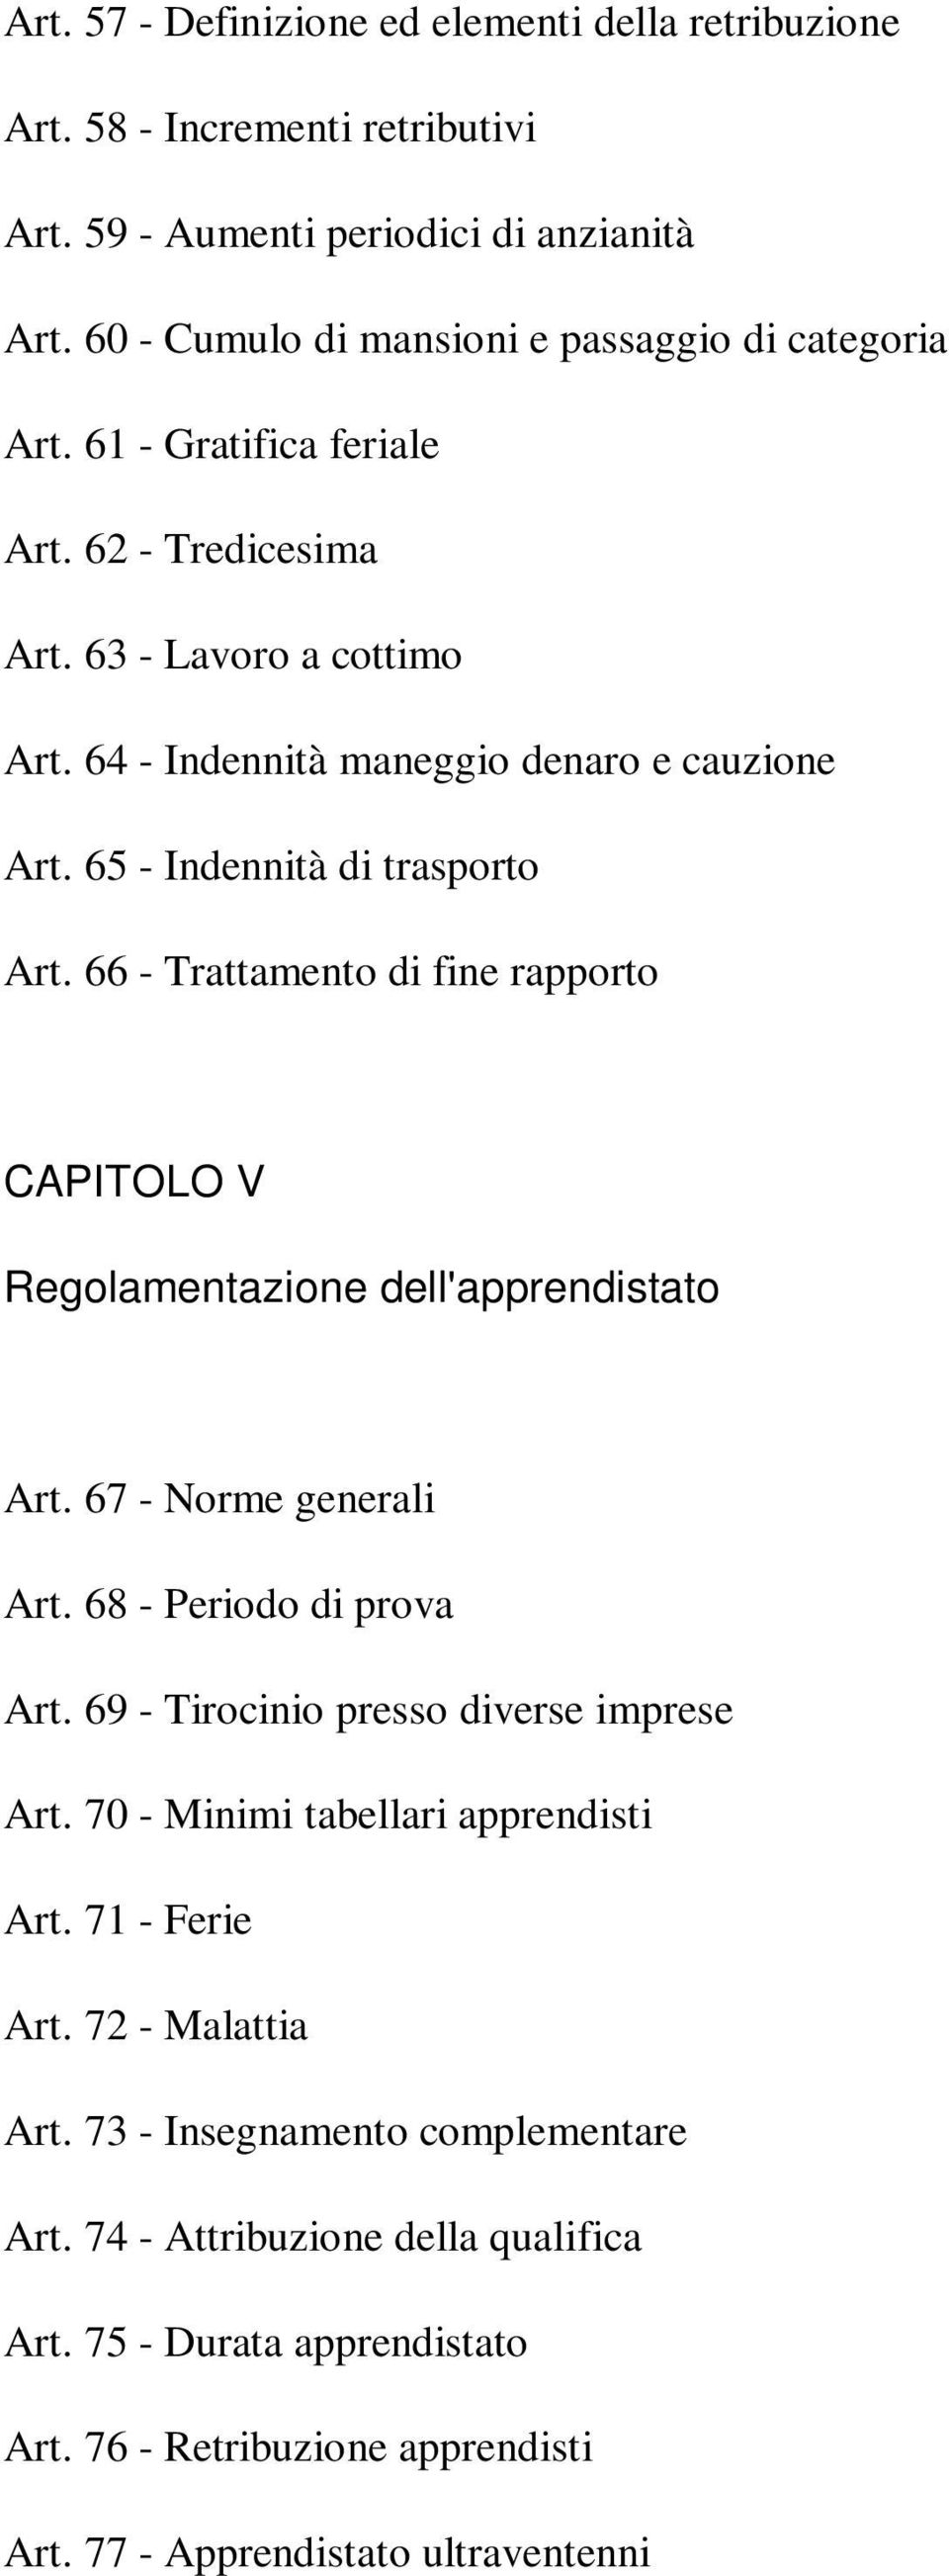 66 - Trattamento di fine rapporto CAPITOLO V Regolamentazione dell'apprendistato Art. 67 - Norme generali Art. 68 - Periodo di prova Art. 69 - Tirocinio presso diverse imprese Art.